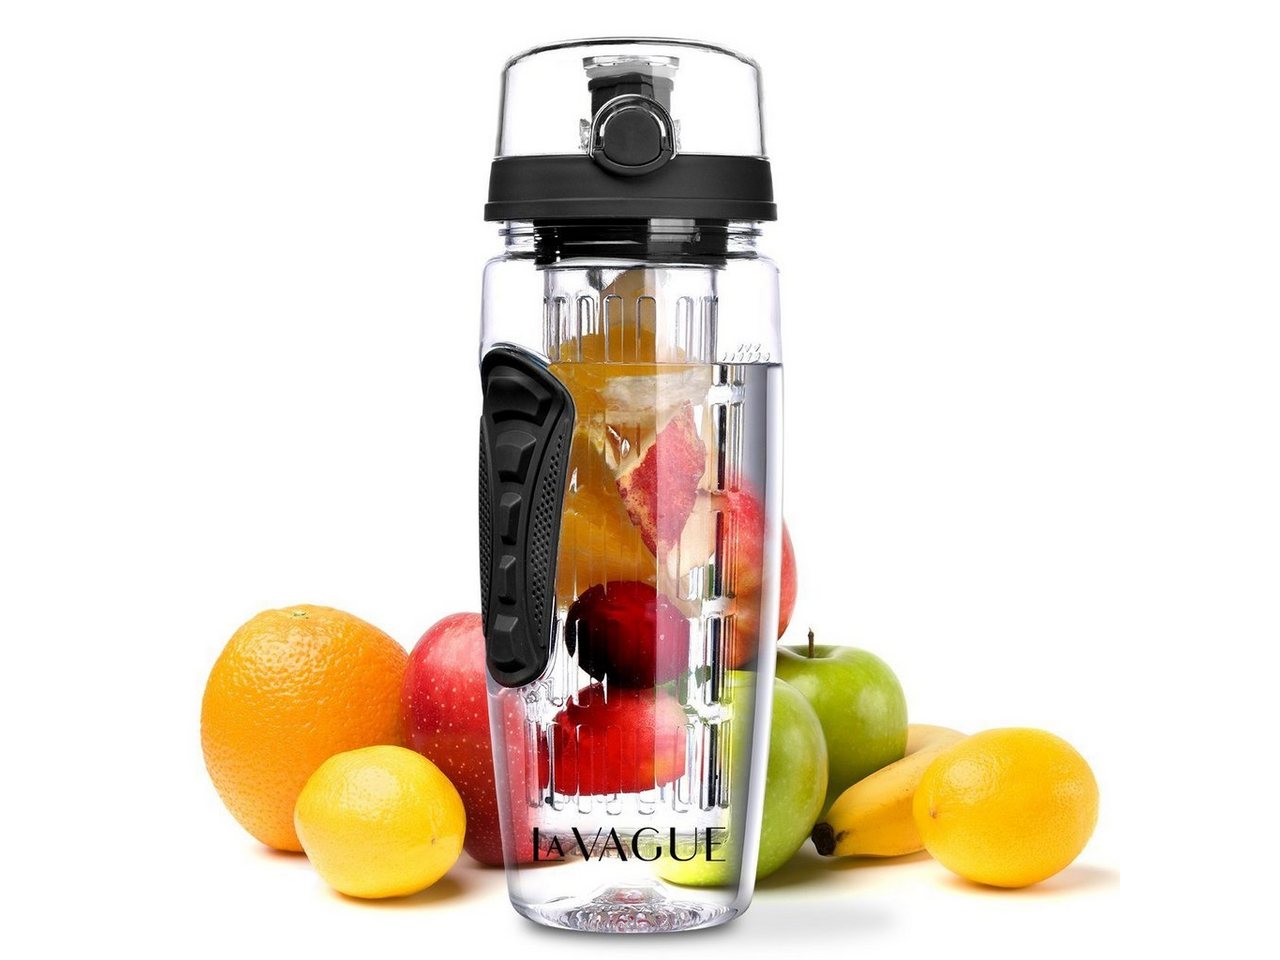 LA VAGUE Trinkflasche VITALITY trinkflasche mit einsatz, Trinkflasche mit Früchtesieb für perfekt aromatisierte Getränke von LA VAGUE